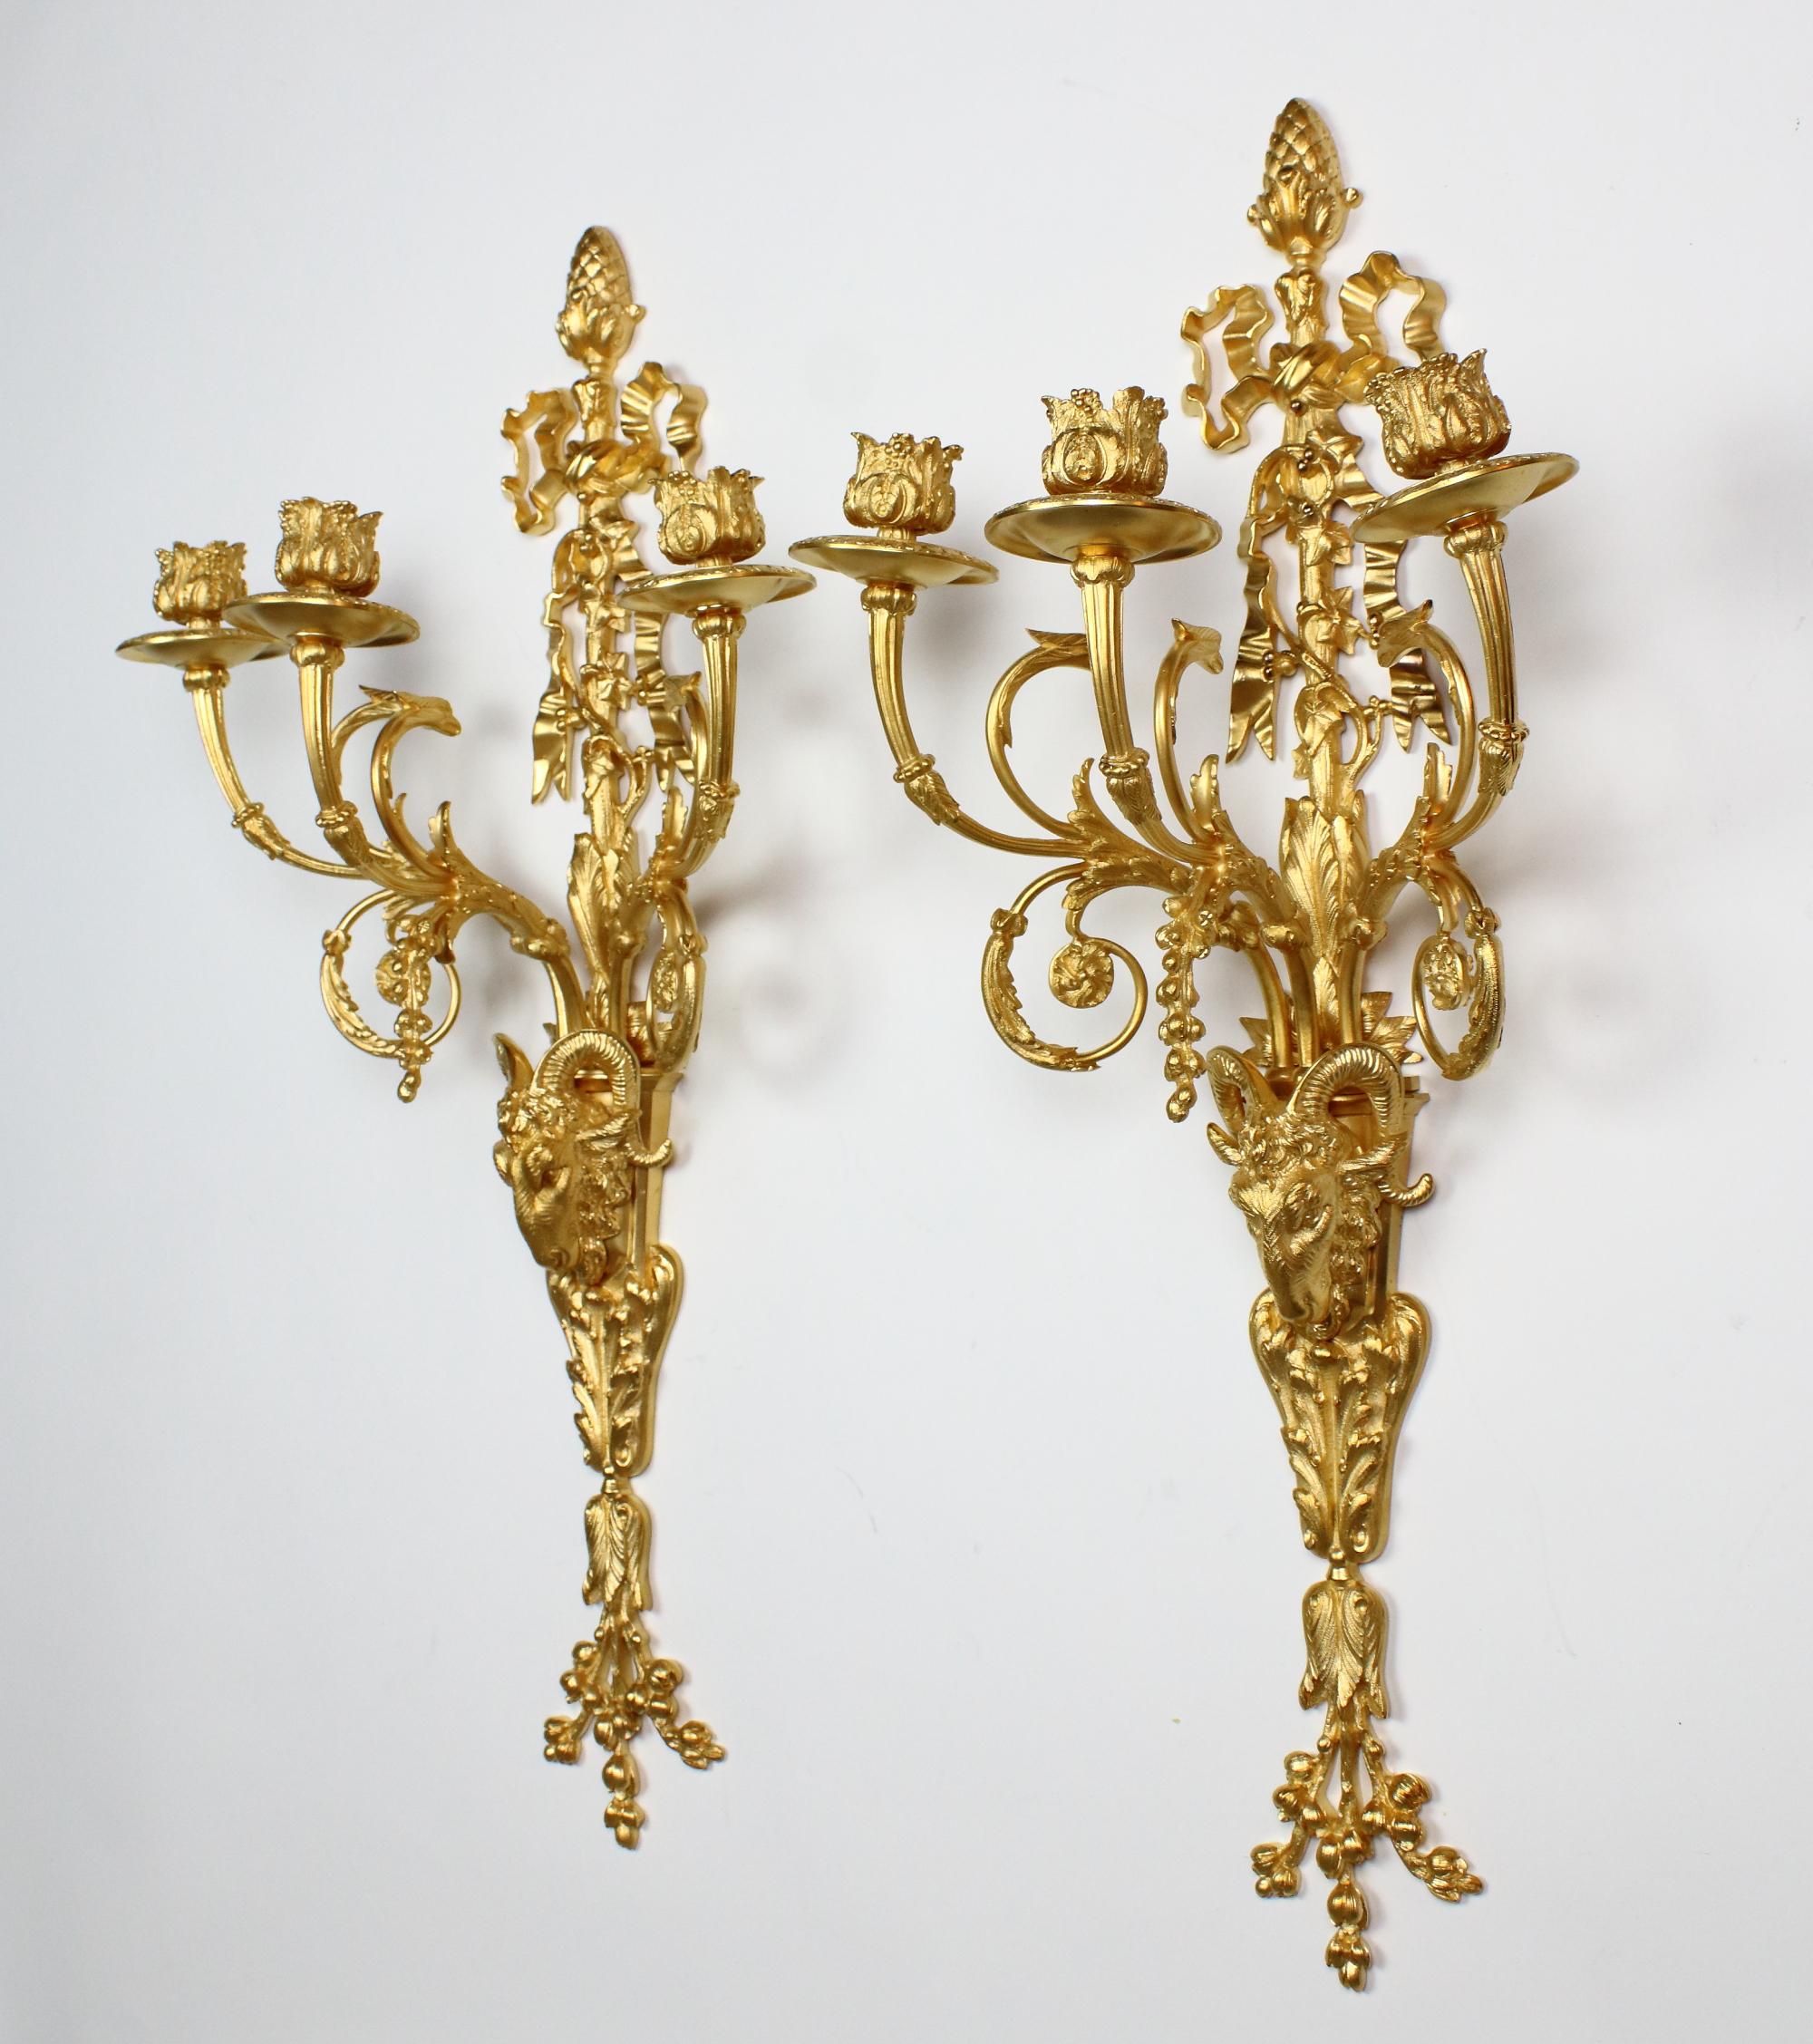 Paar große französische Louis-XVI-Ziegenköpfe aus dem 19. Jahrhundert, dreiflammige Wandleuchten/Spots

Ein Paar vergoldete Bronze-Wandleuchten mit drei Zweigen im Louis XVI-Stil, jede mit einer Rückplatte, deren unterer Teil die Form eines